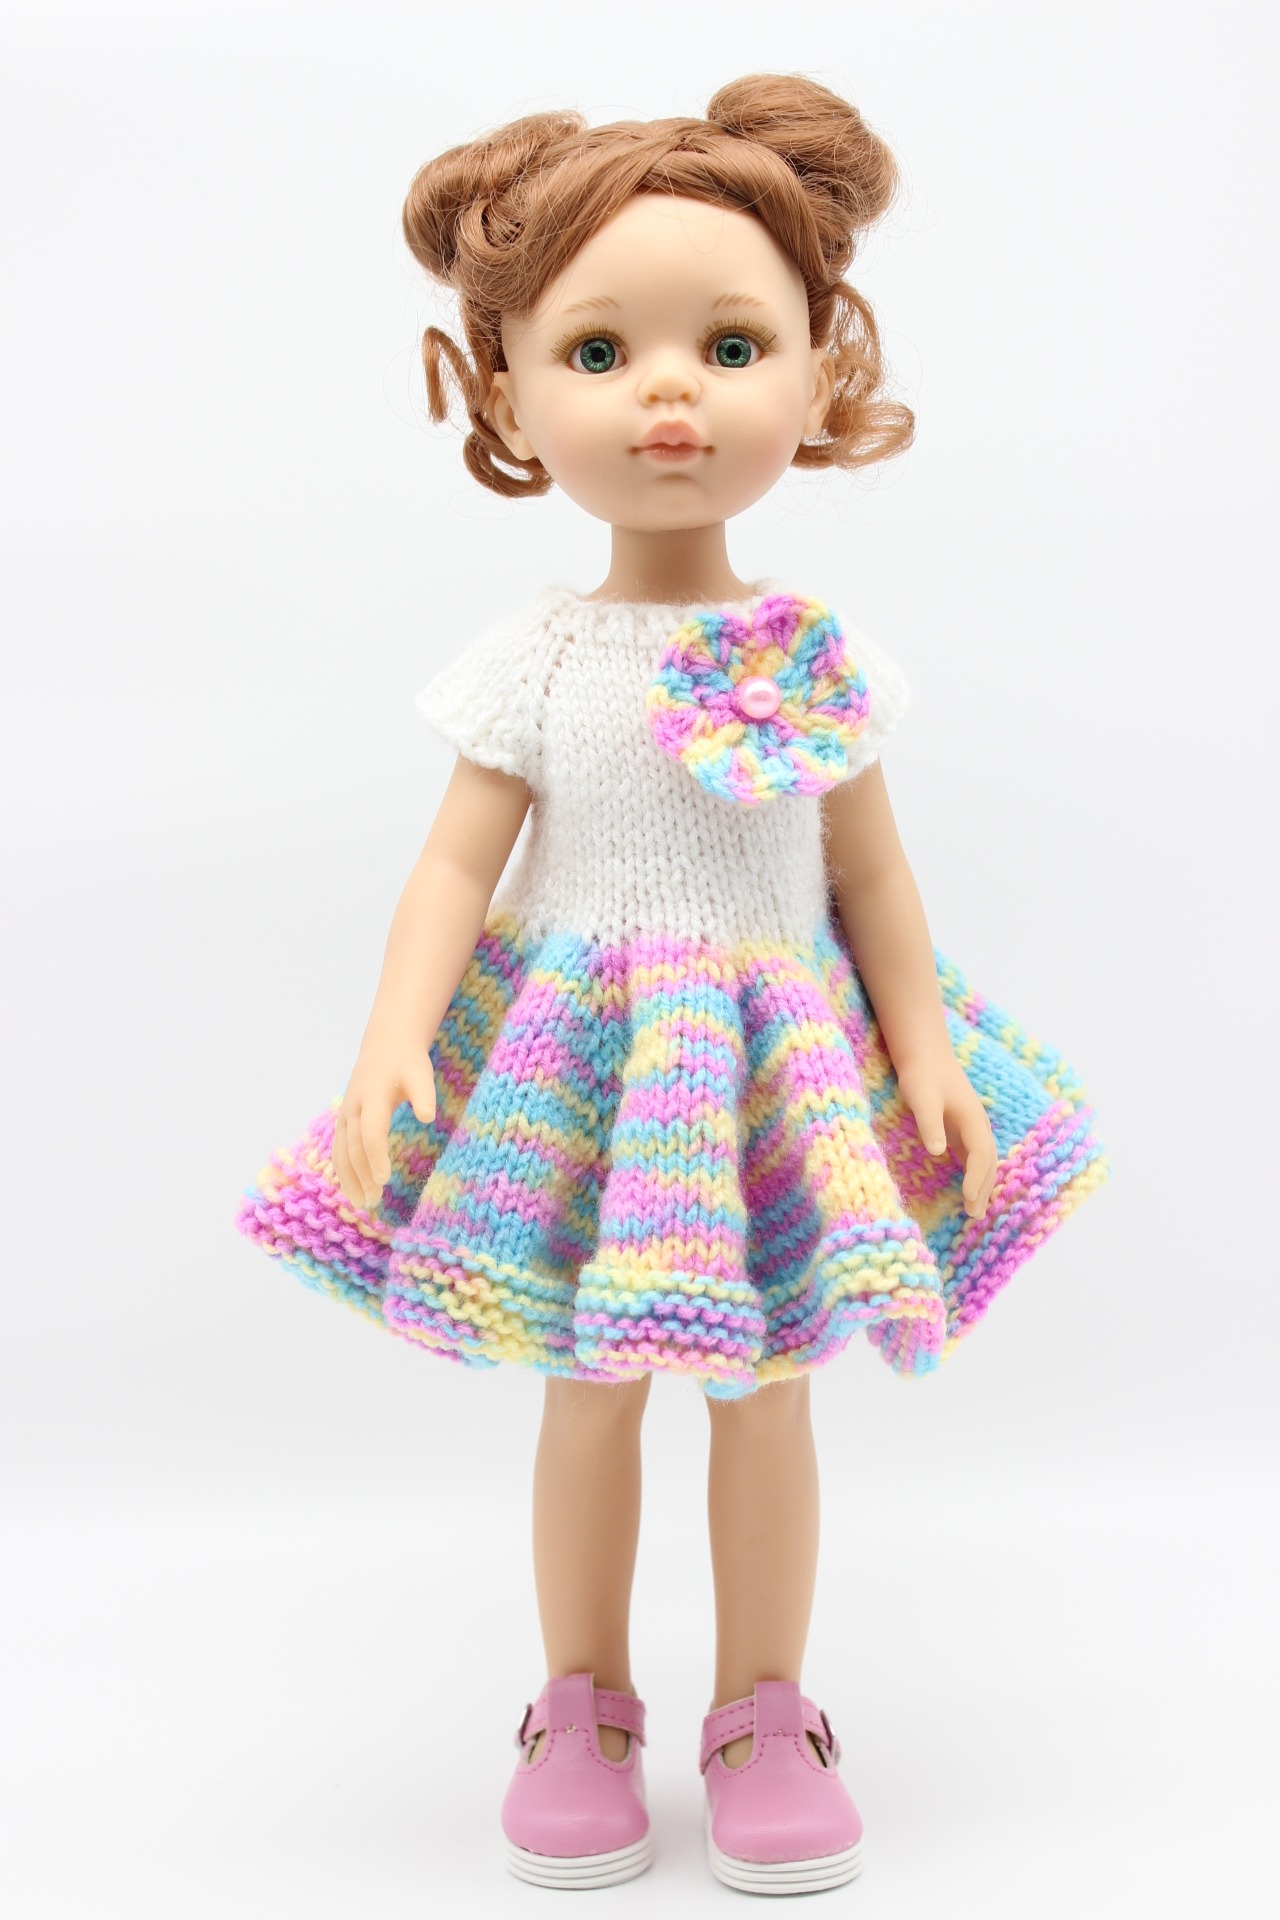 Одежда для кукол 32 см. Платье для Паола Рейна 32. Наряды для Паола Рейна 32 см. Топ для куклы Паола Рейна. Одежда для куклы Паола Рейна 32 см вязаная.